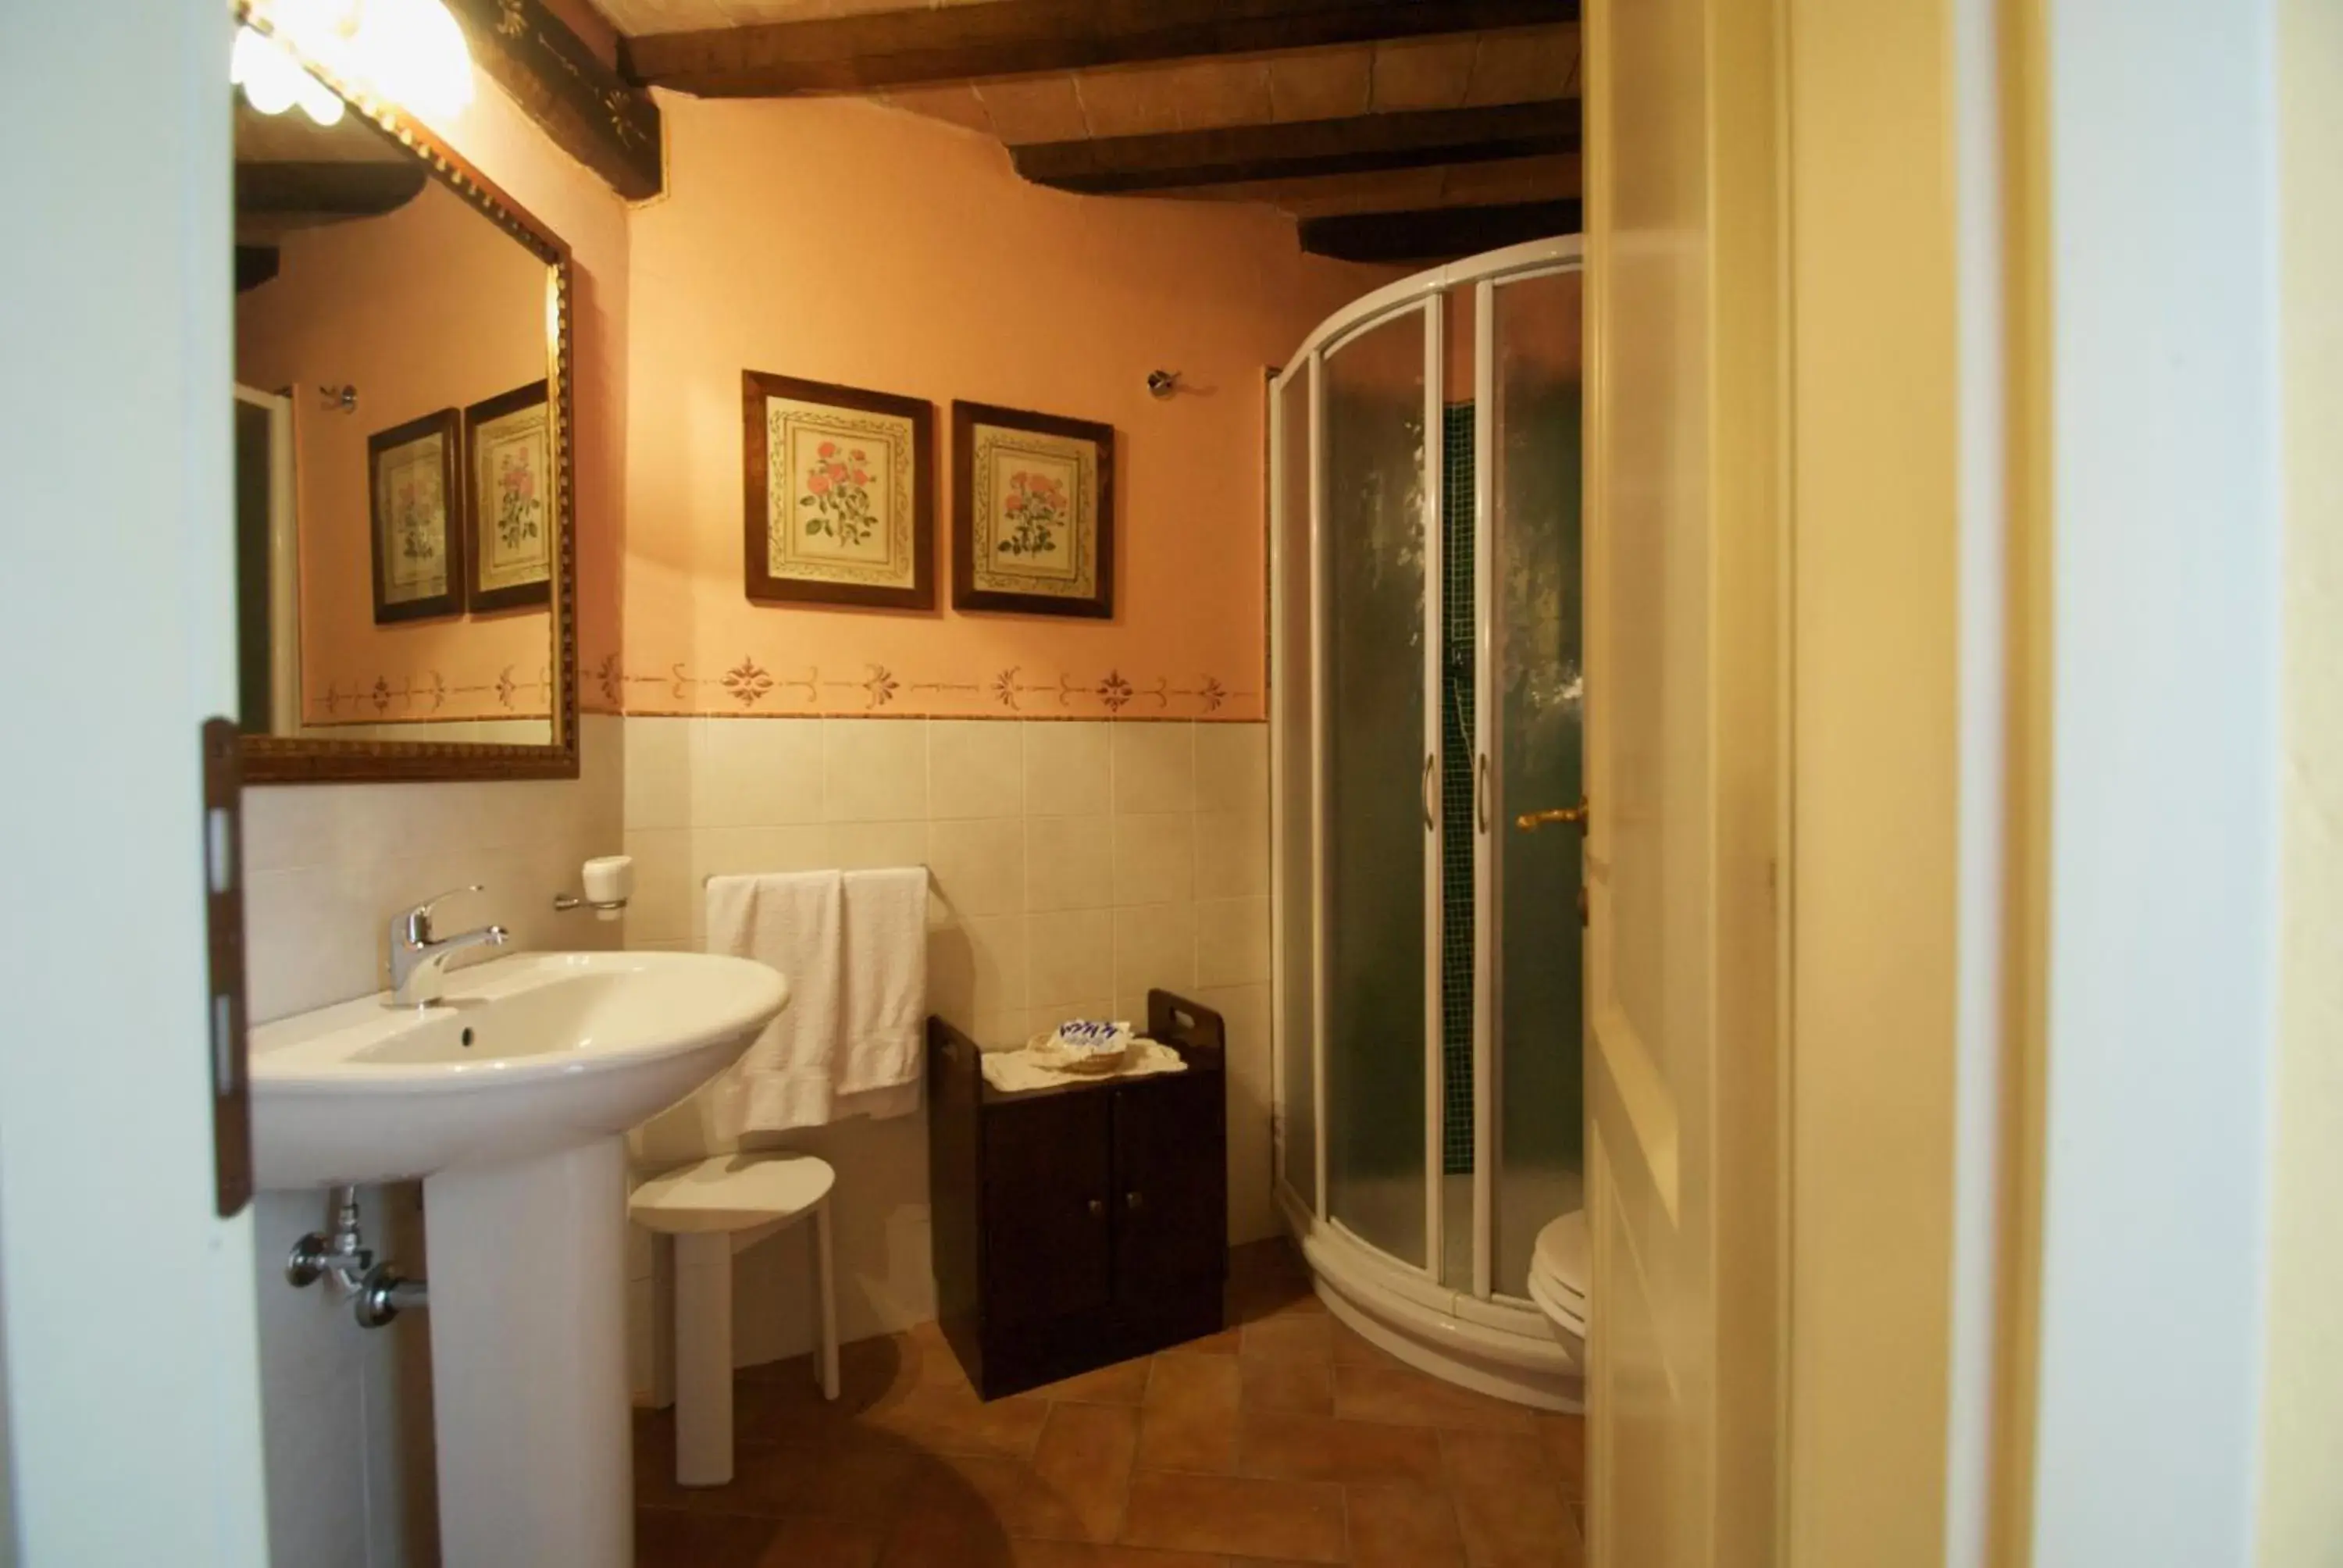 Area and facilities, Bathroom in Torre Sangiovanni Albergo e Ristorante